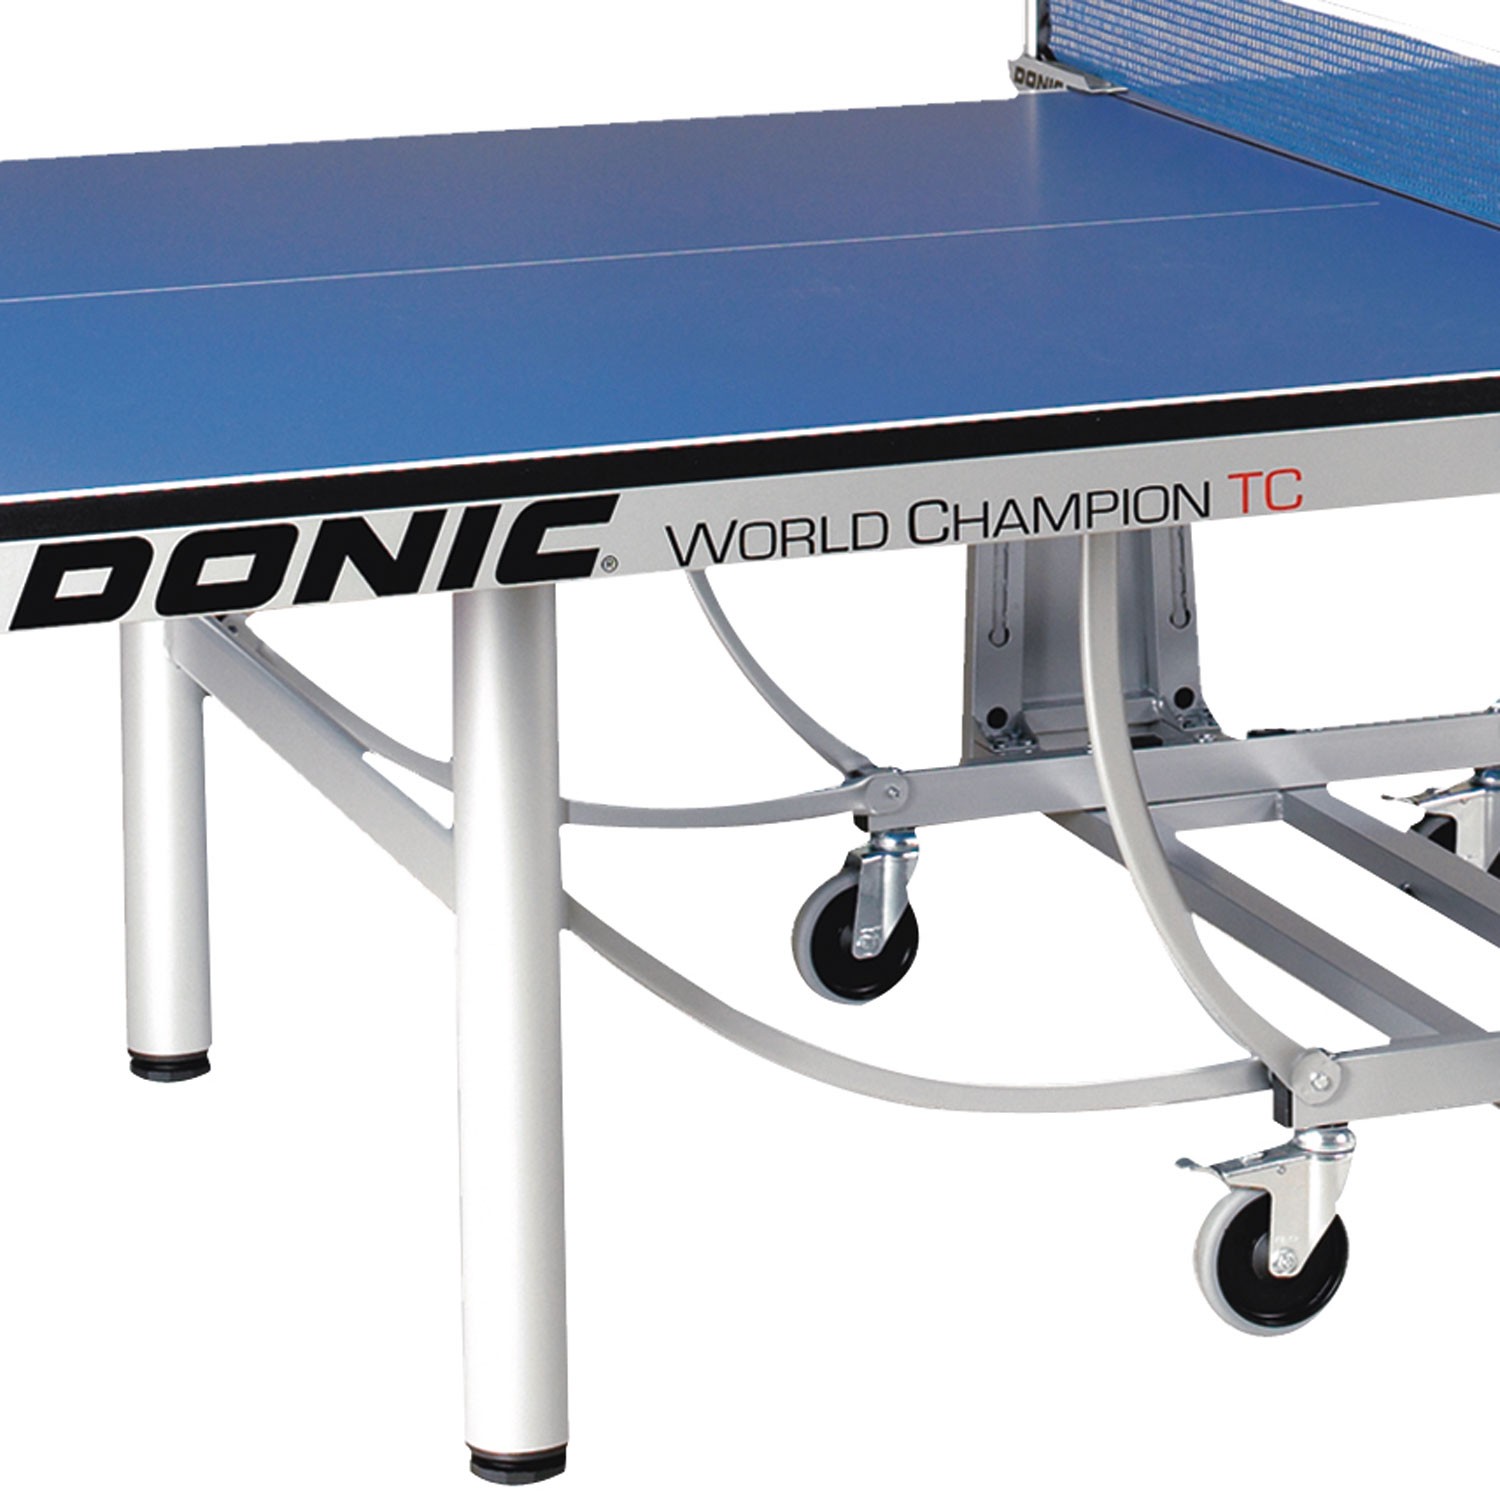 Теннисный стол Donic WORLD CHAMPION TC синий (без сетки), изображение 3